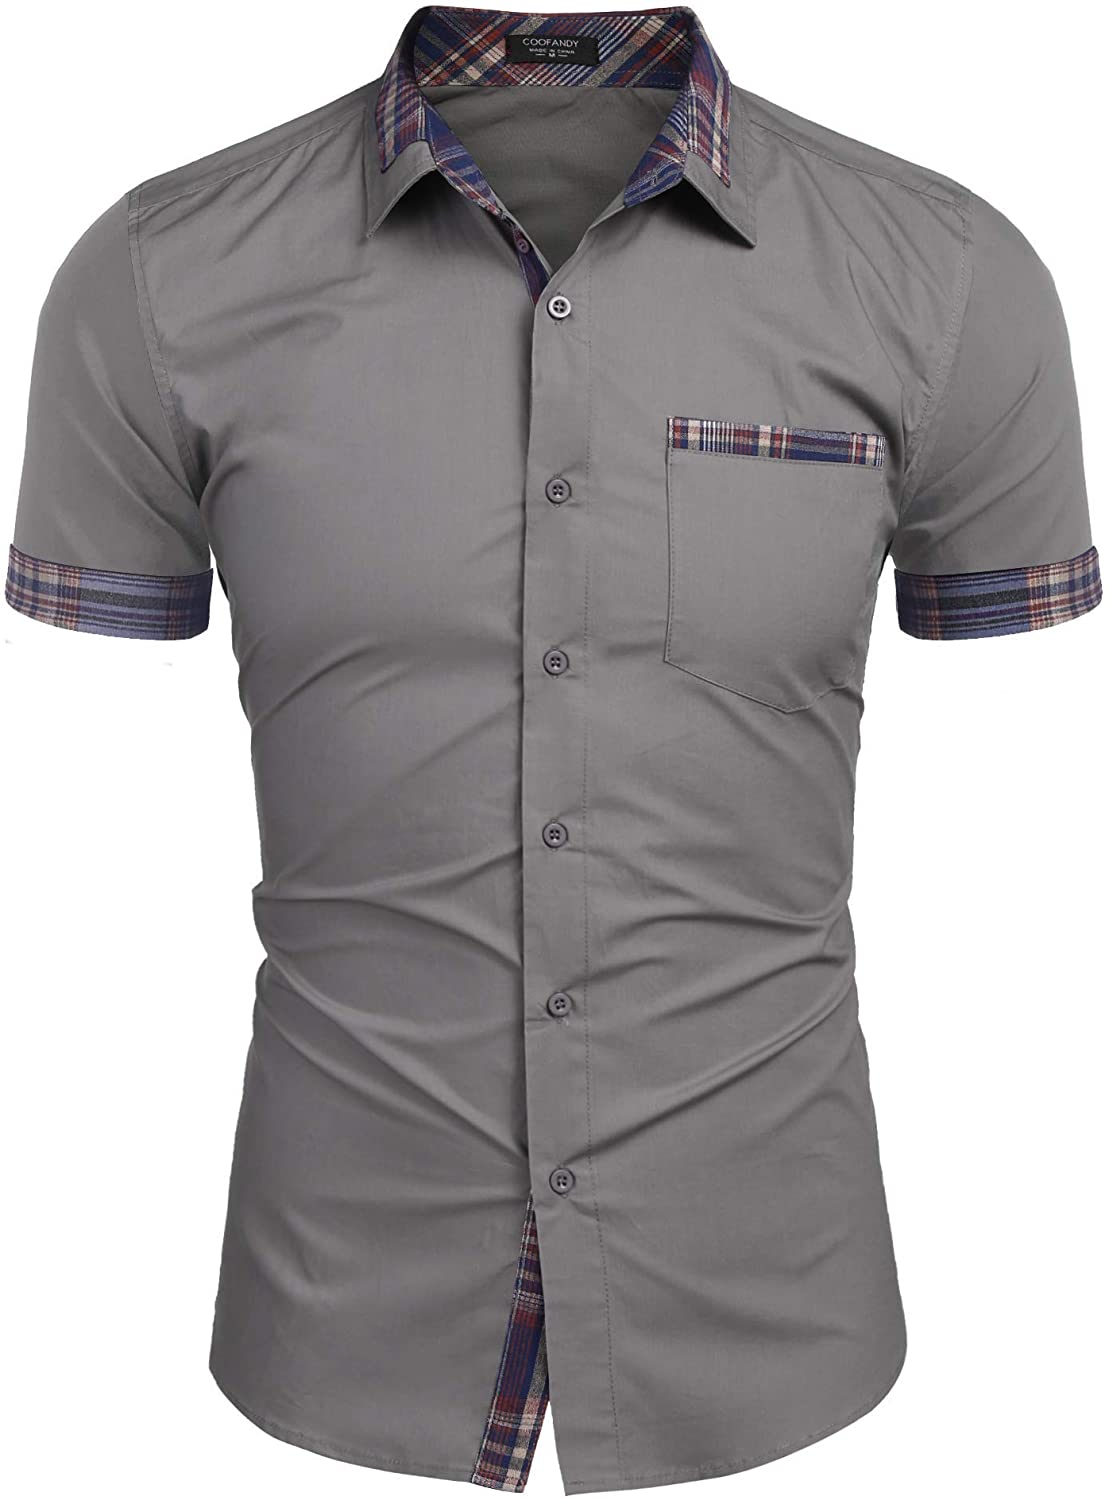 COOFANDY Men's Casual Short Sleeve Dress Shirt Plaid Collar Cotton Button Down Shirt 